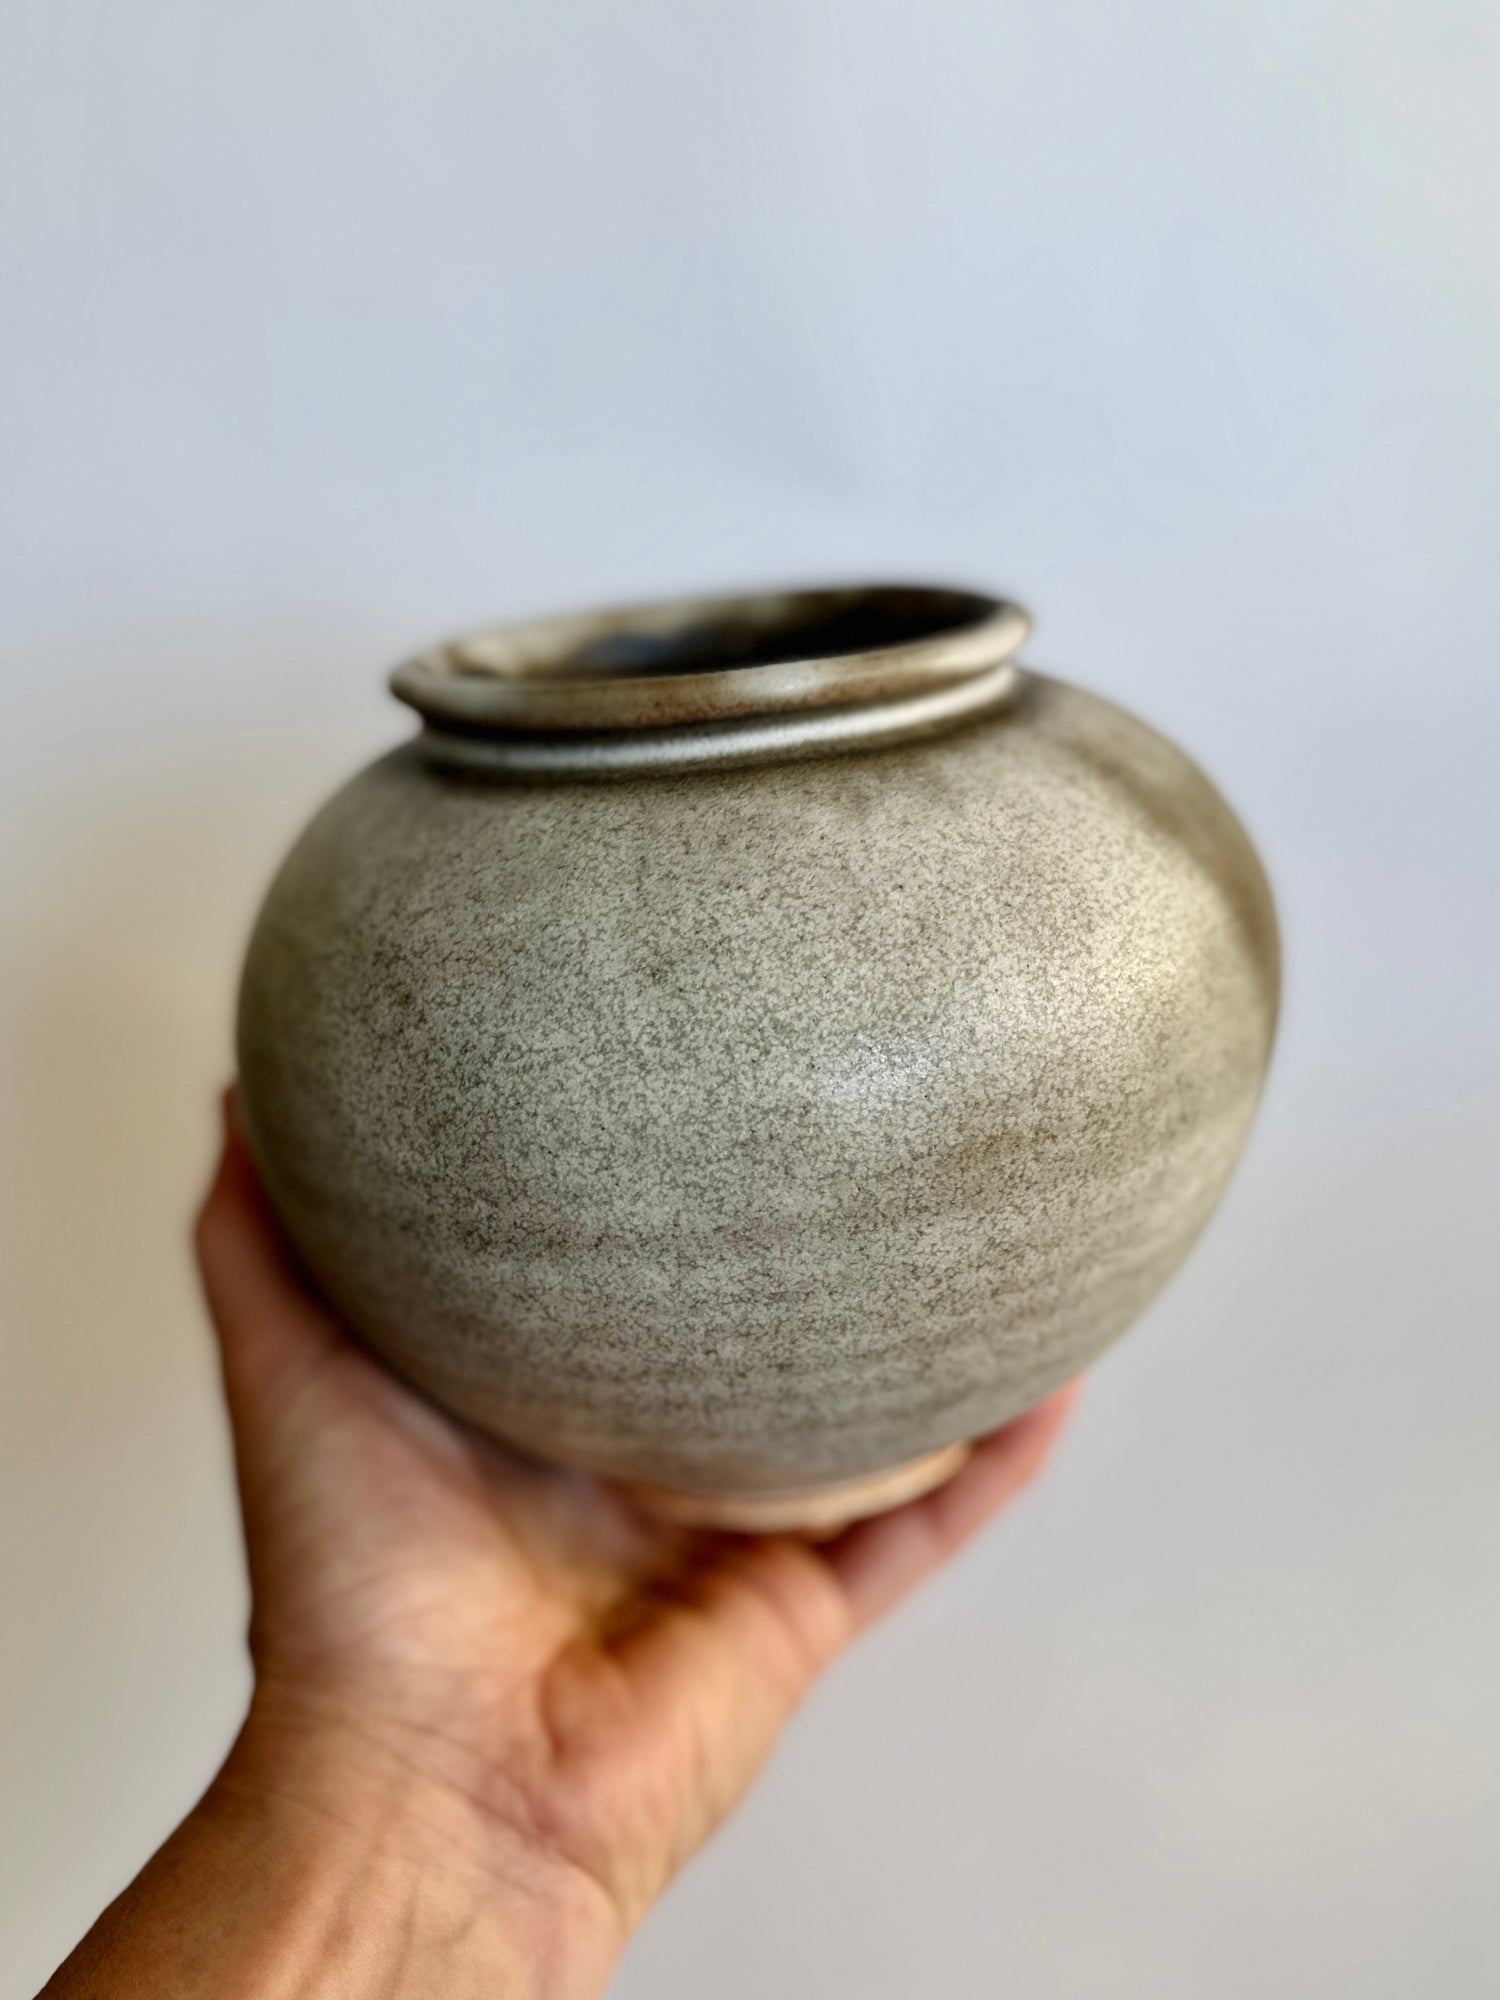 Gray/tan vase no. 23